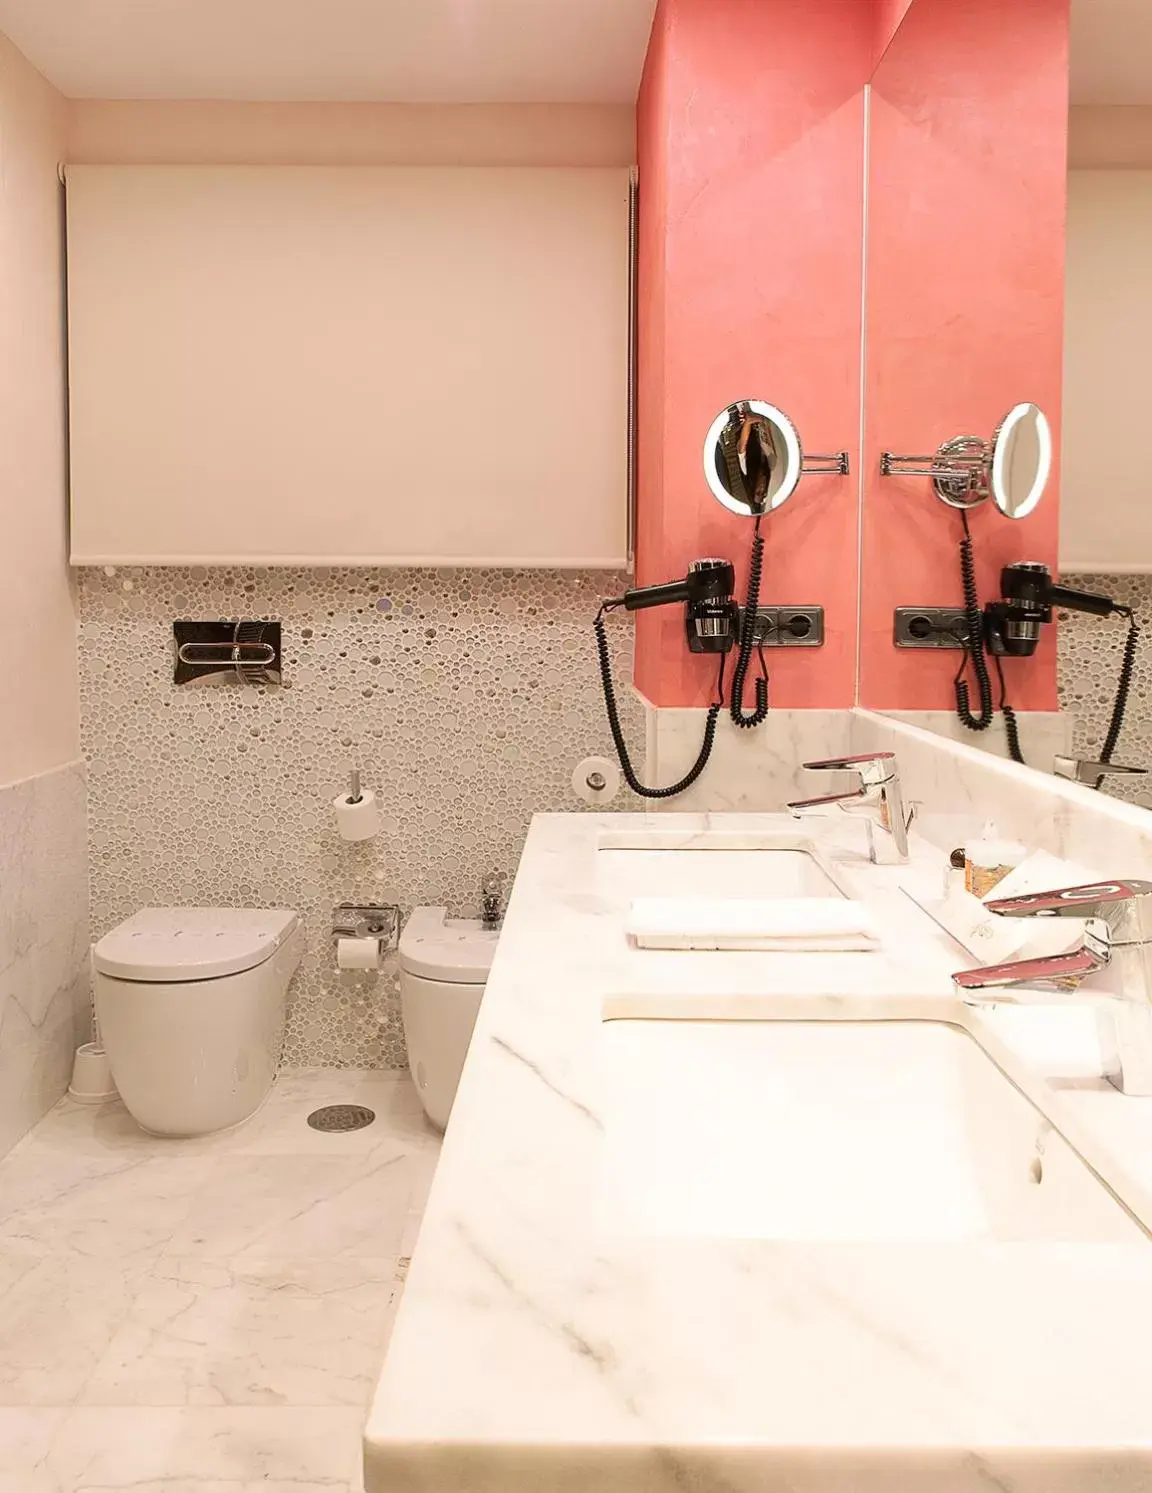 Bathroom in Hotel Pintor El Greco